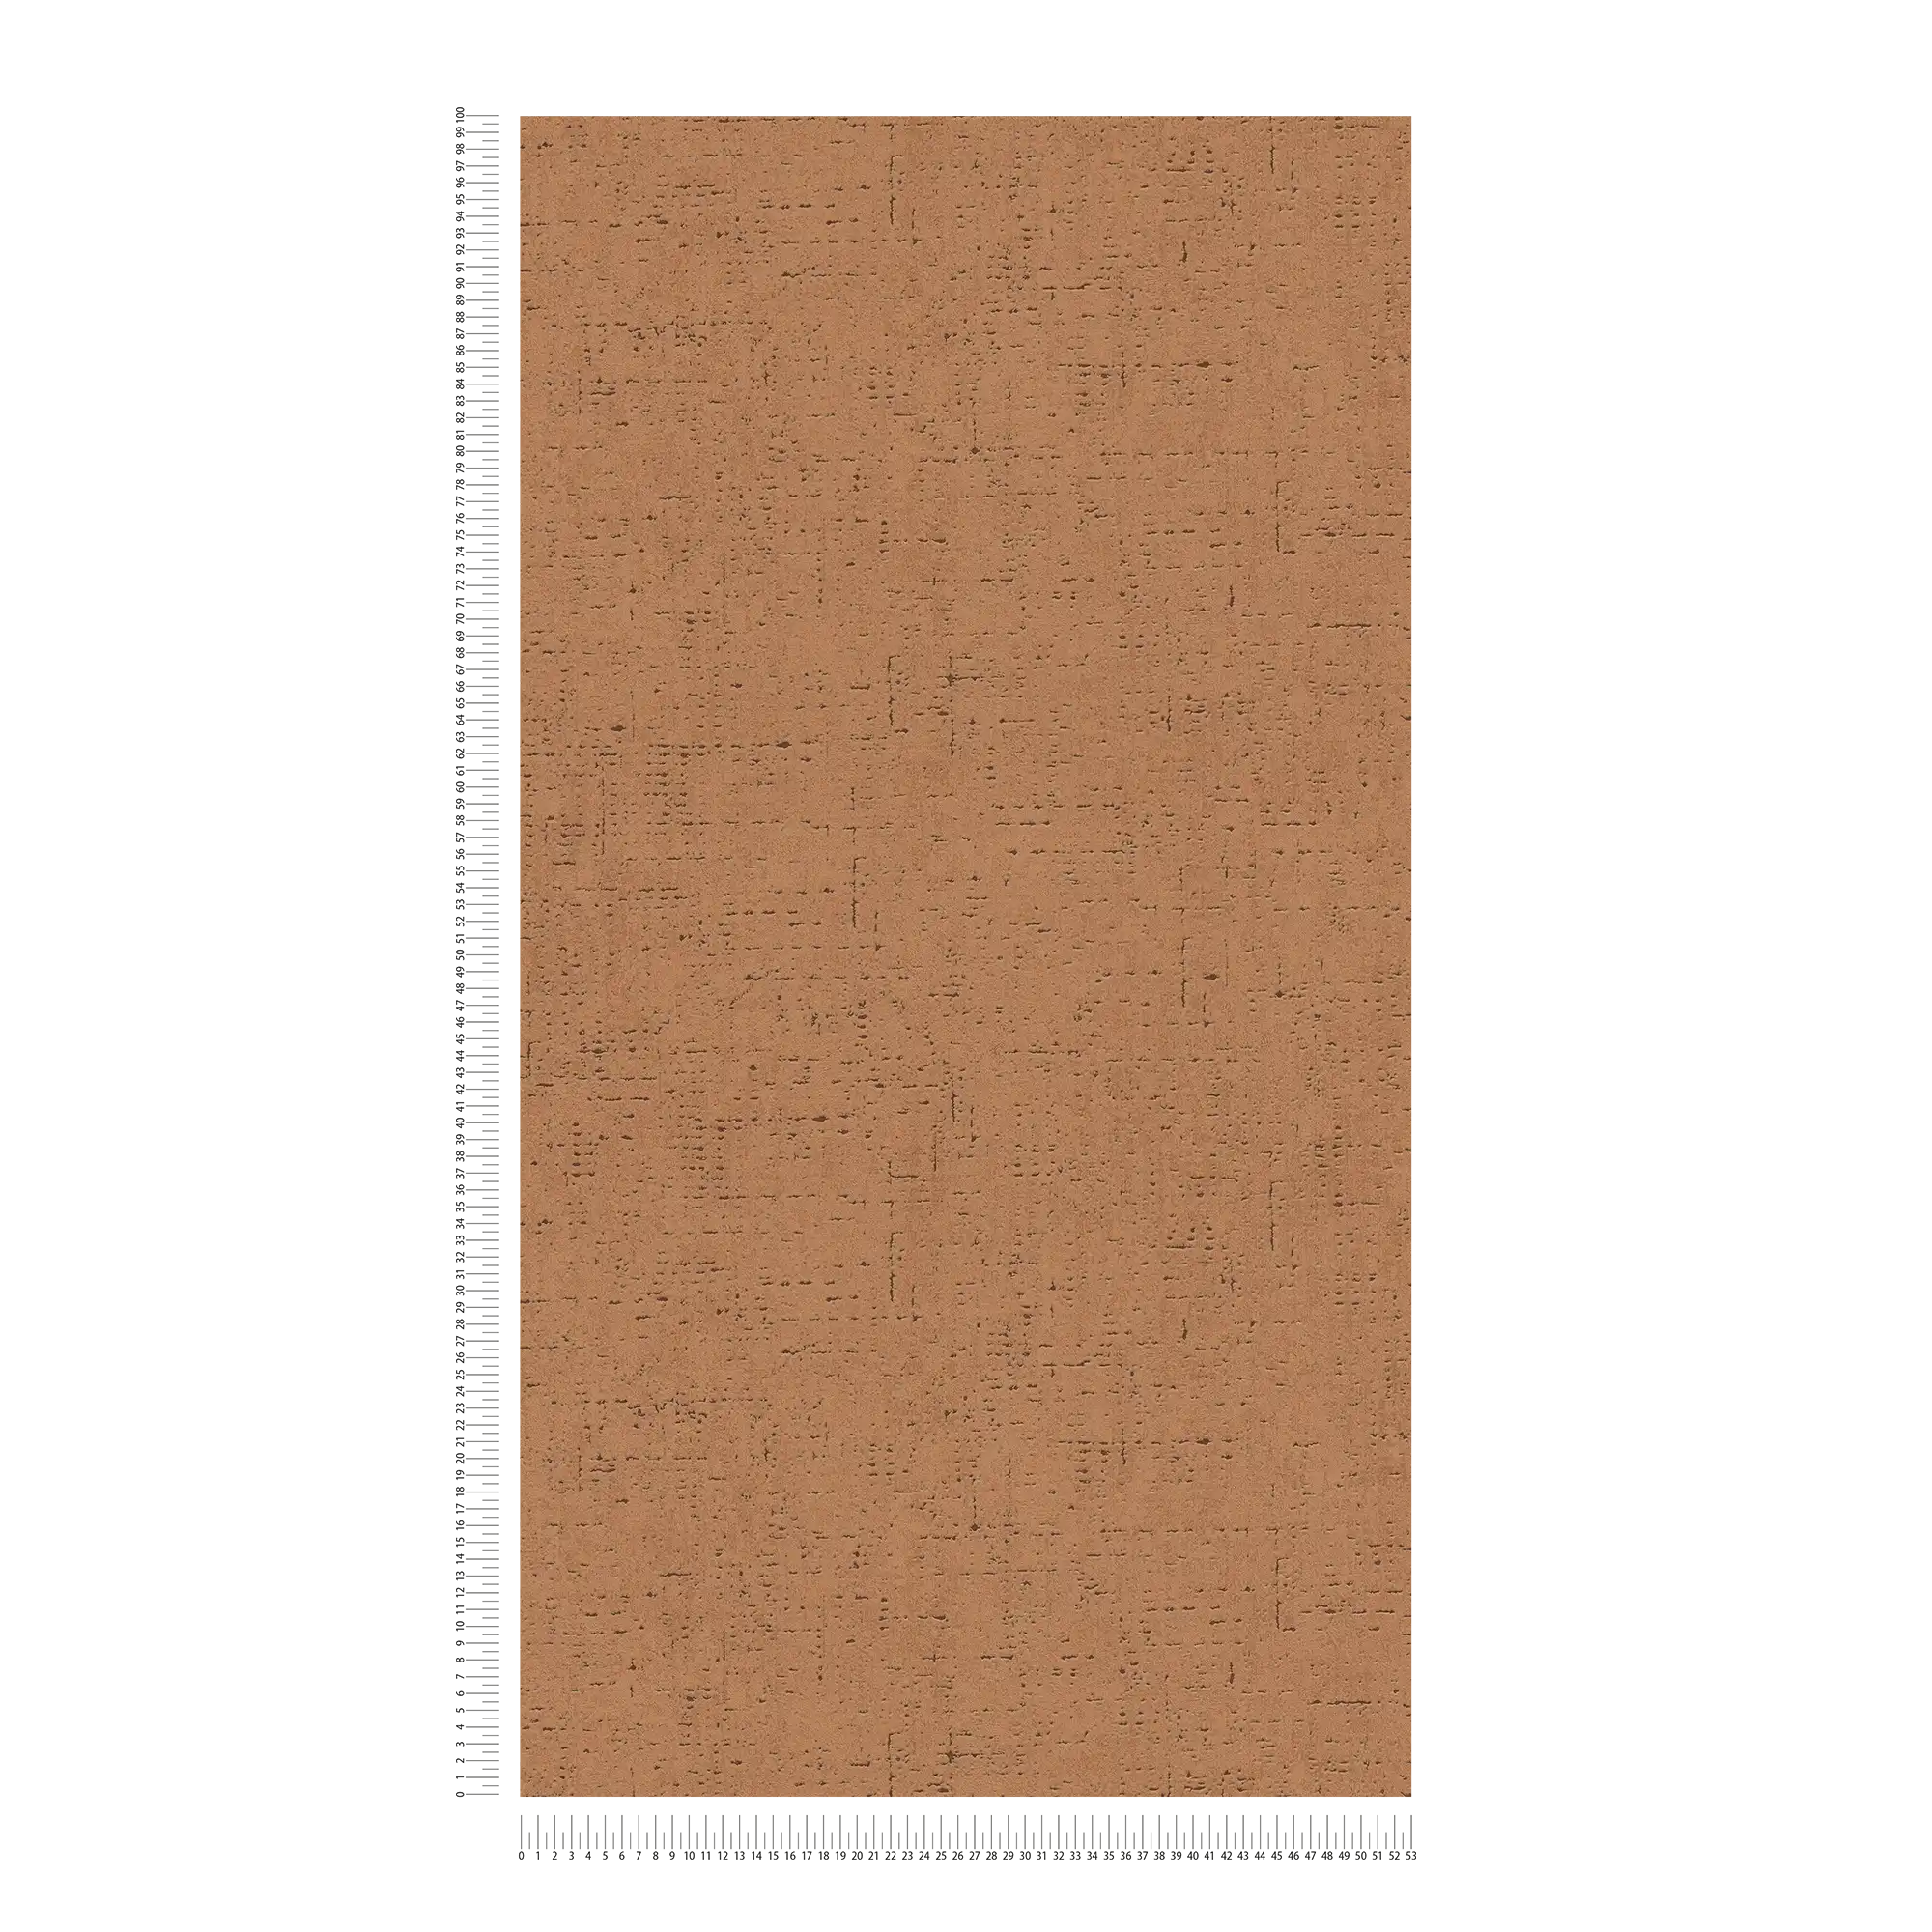             Papel pintado unitario con motivo de corcho y textura - marrón, naranja
        